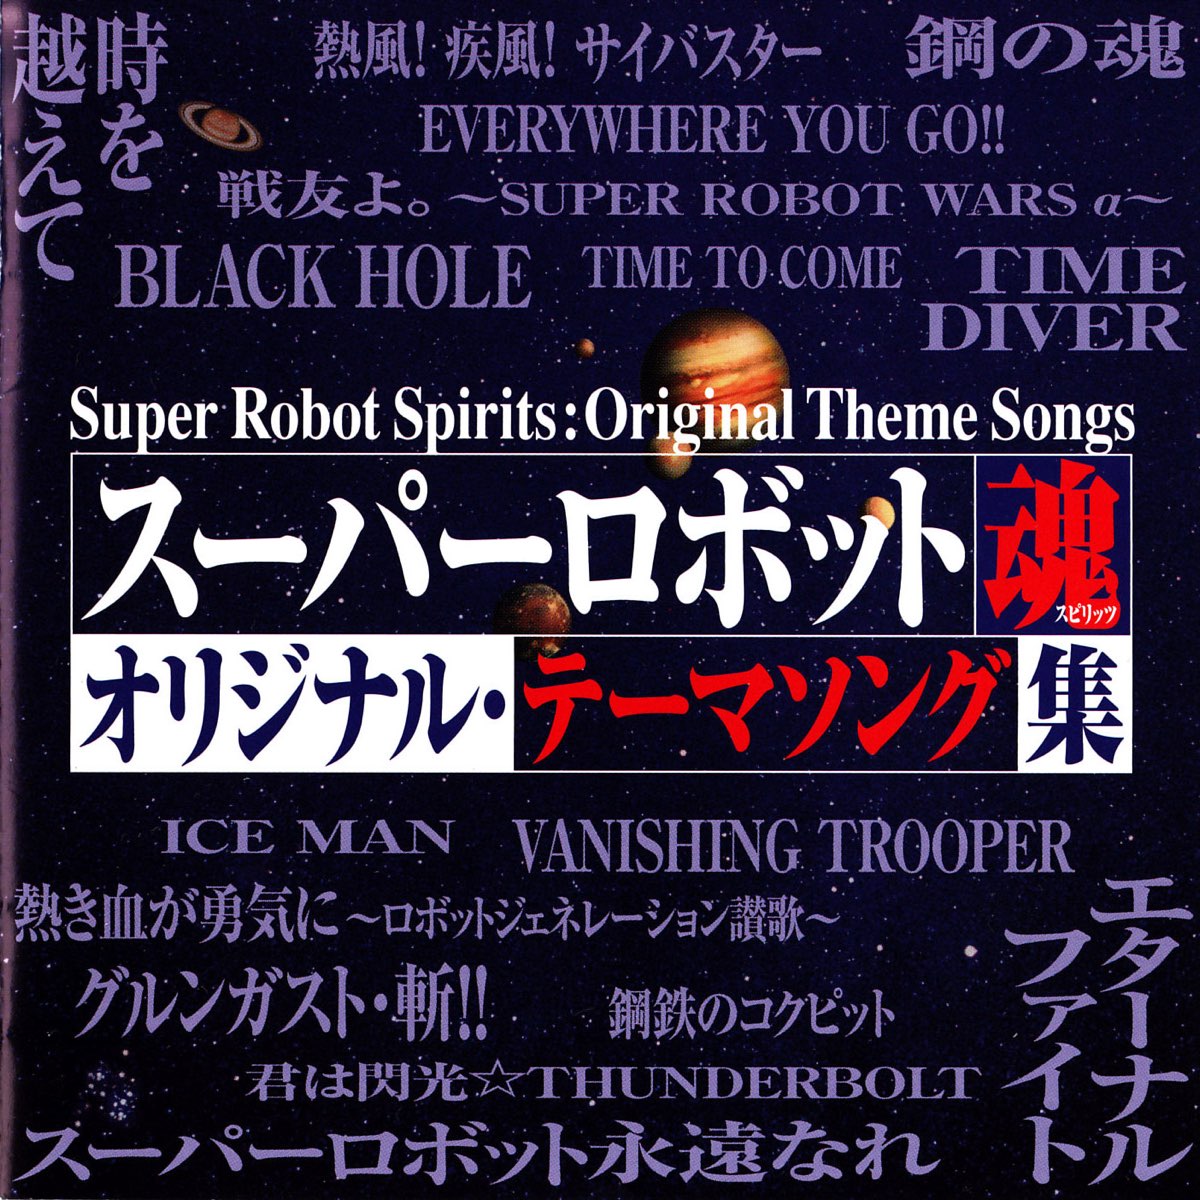 Various Artistsの スーパーロボット魂 オリジナルテーマソング集 をapple Musicで